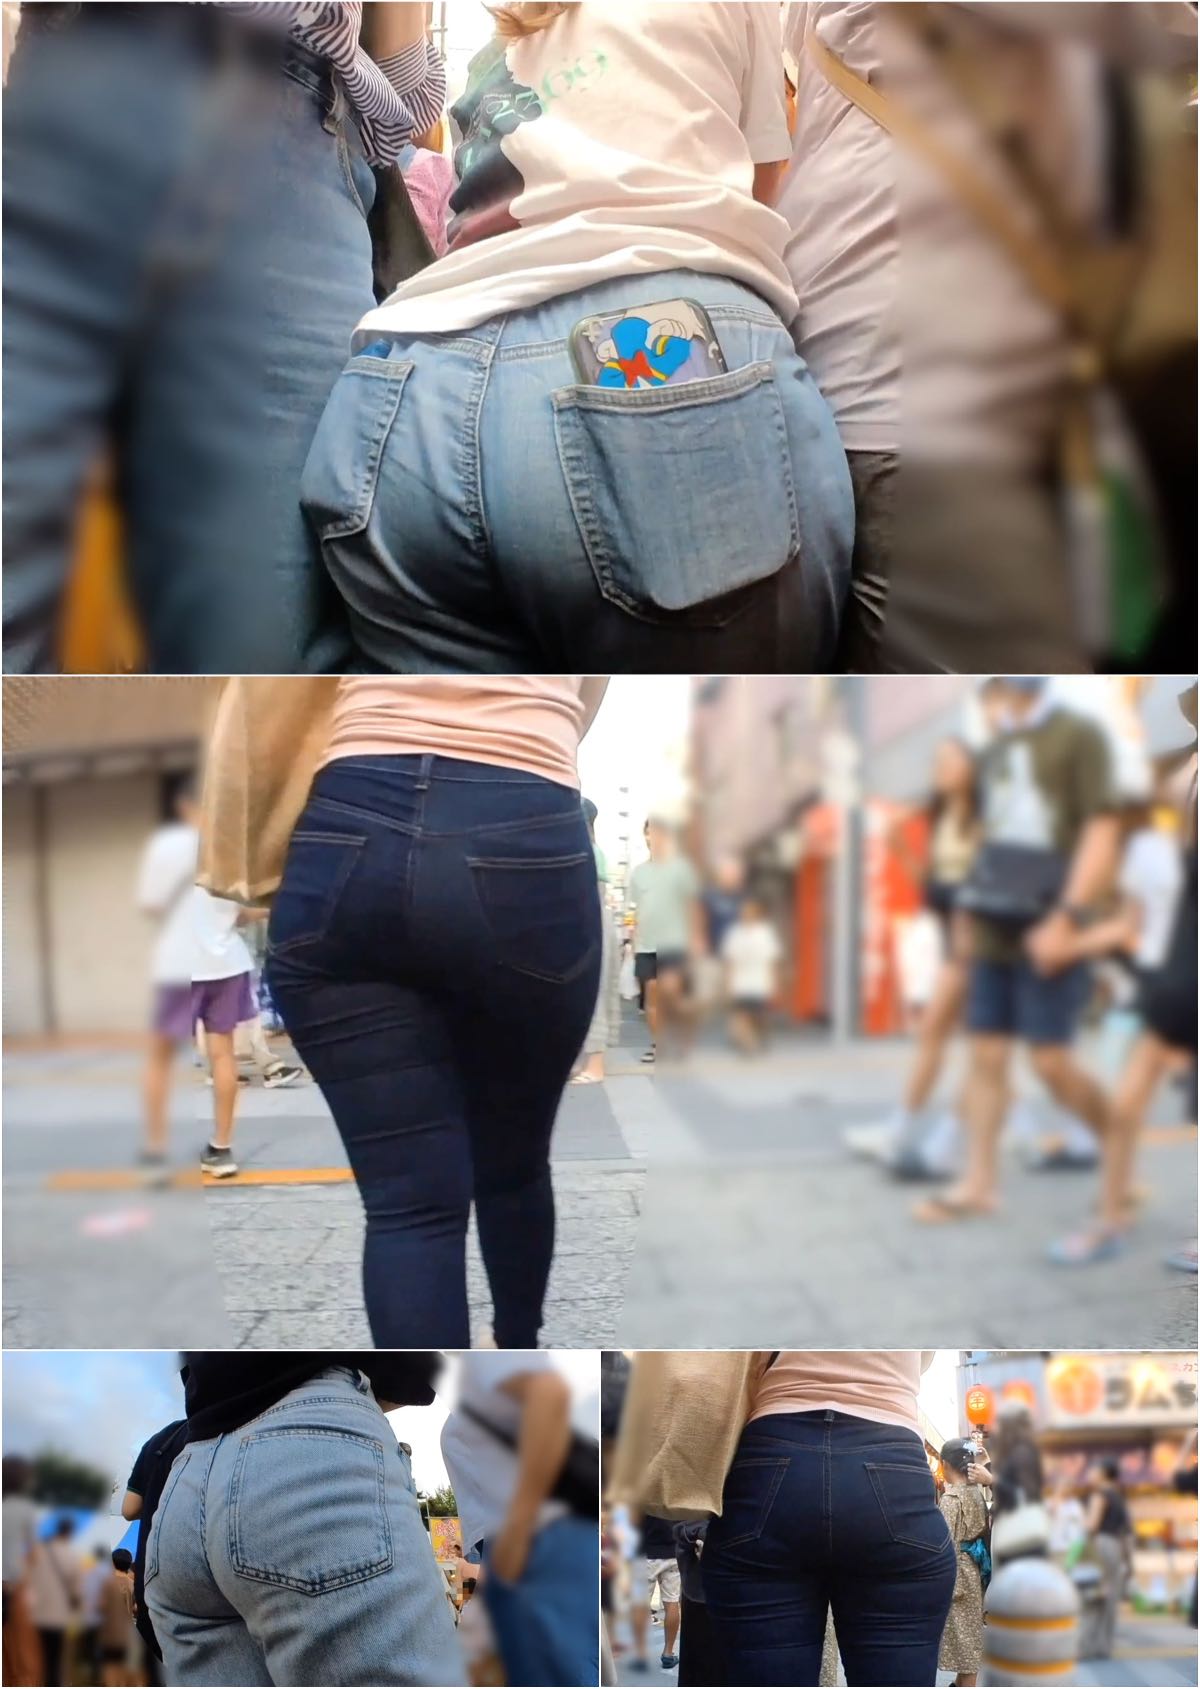 【ジーンズ3名3シーン収録】デカ尻巨尻お姉さんたちのジーンズ着衣尻を粘着撮影。